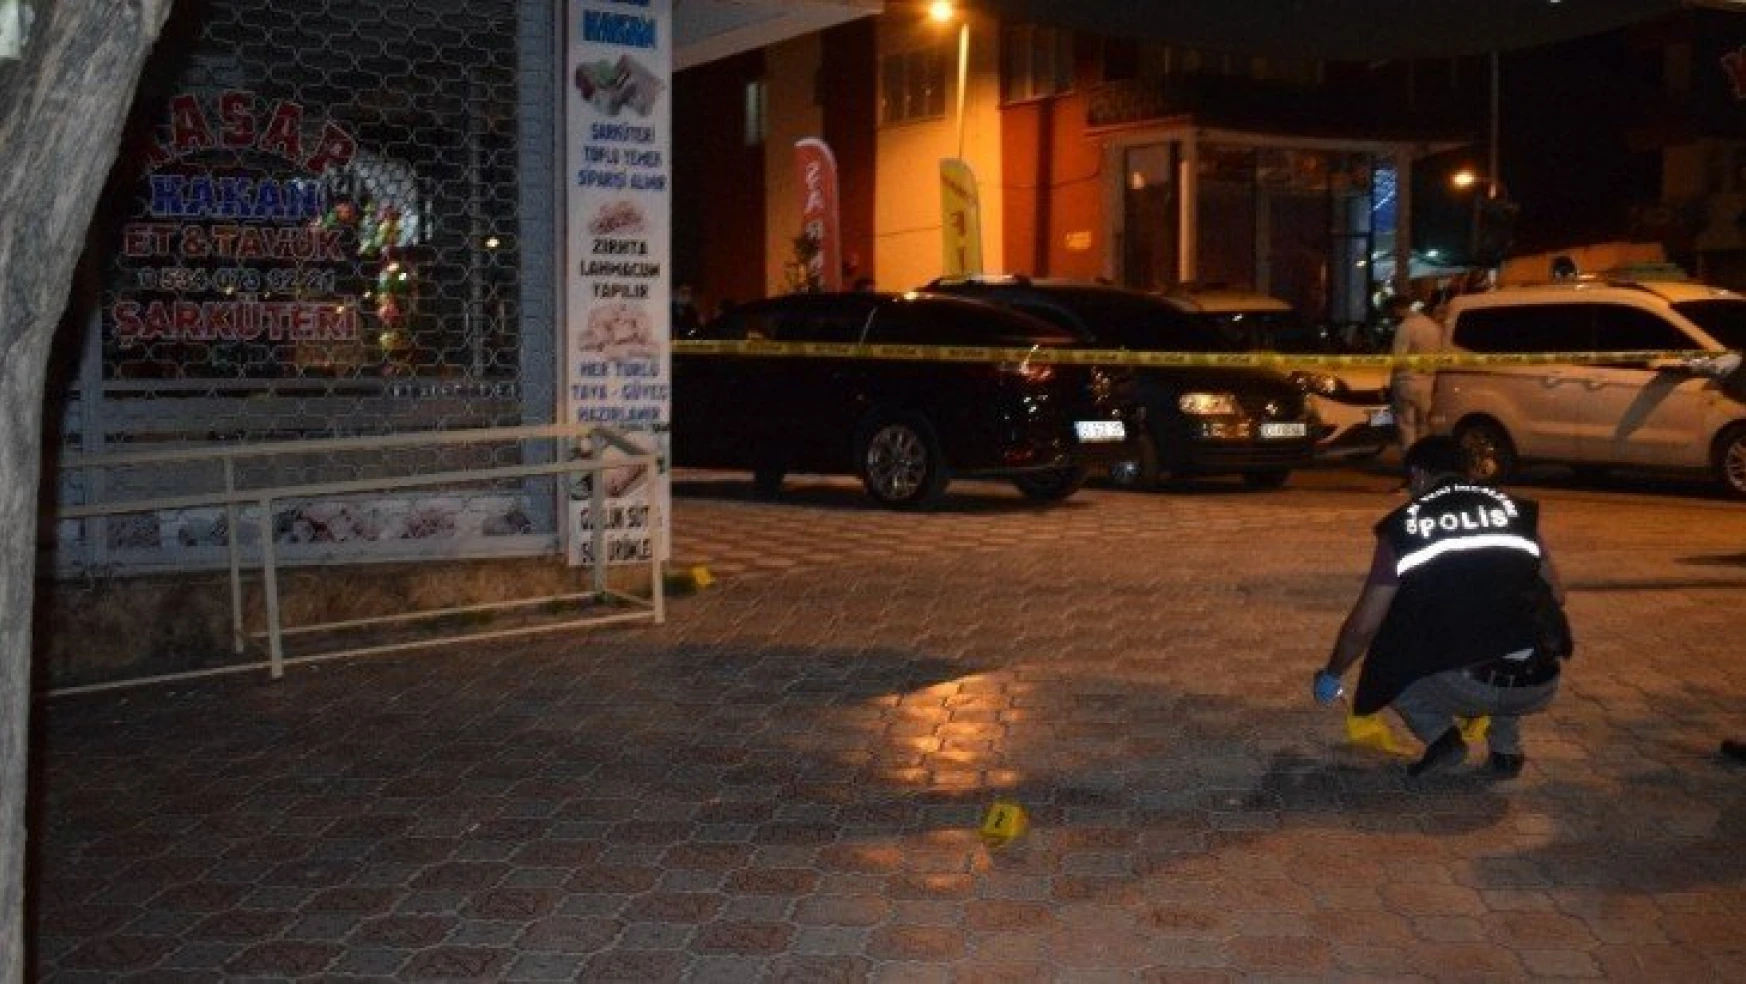 Malatya'da iş yerine silahlı saldırı: 1 yaralı